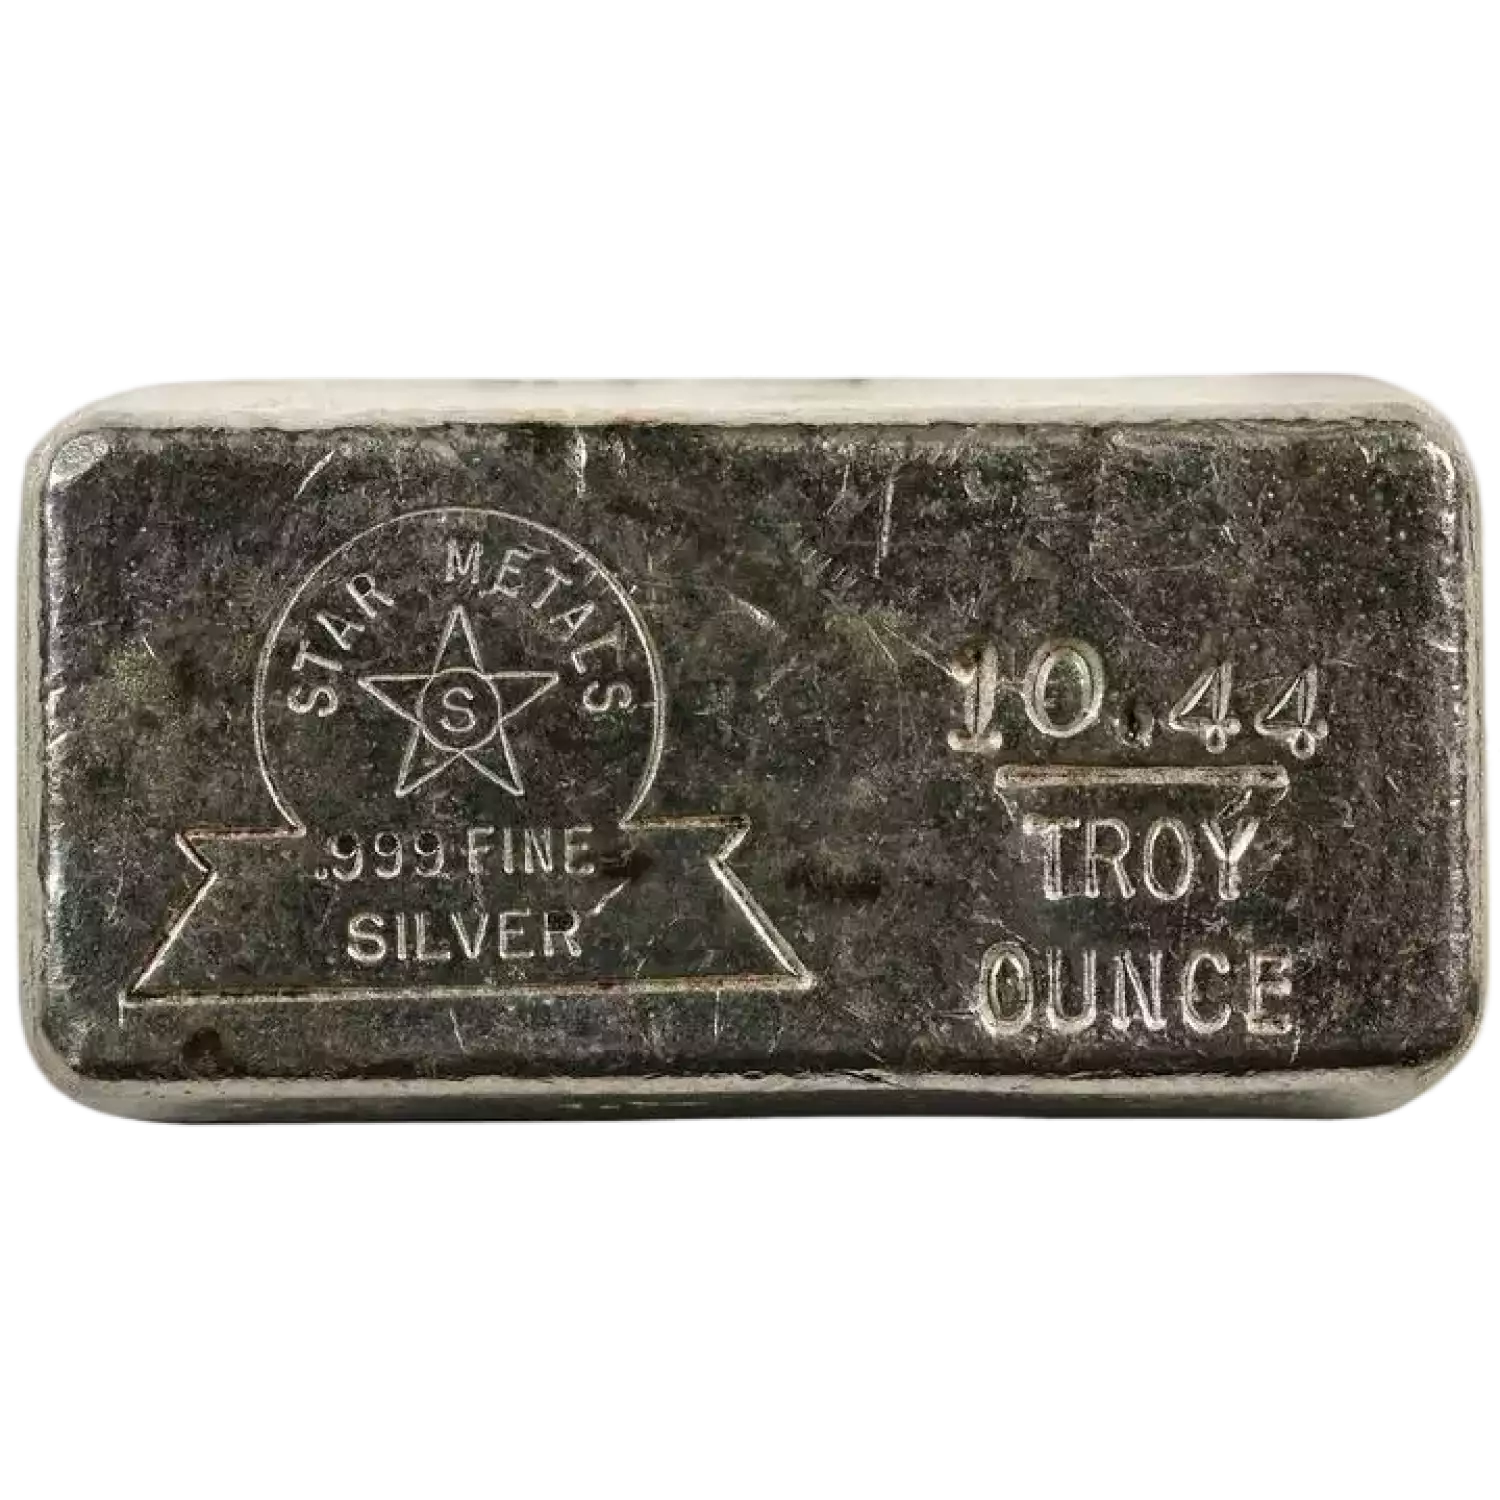 Vintage 10.44 oz Star metals Silver Bar (2)